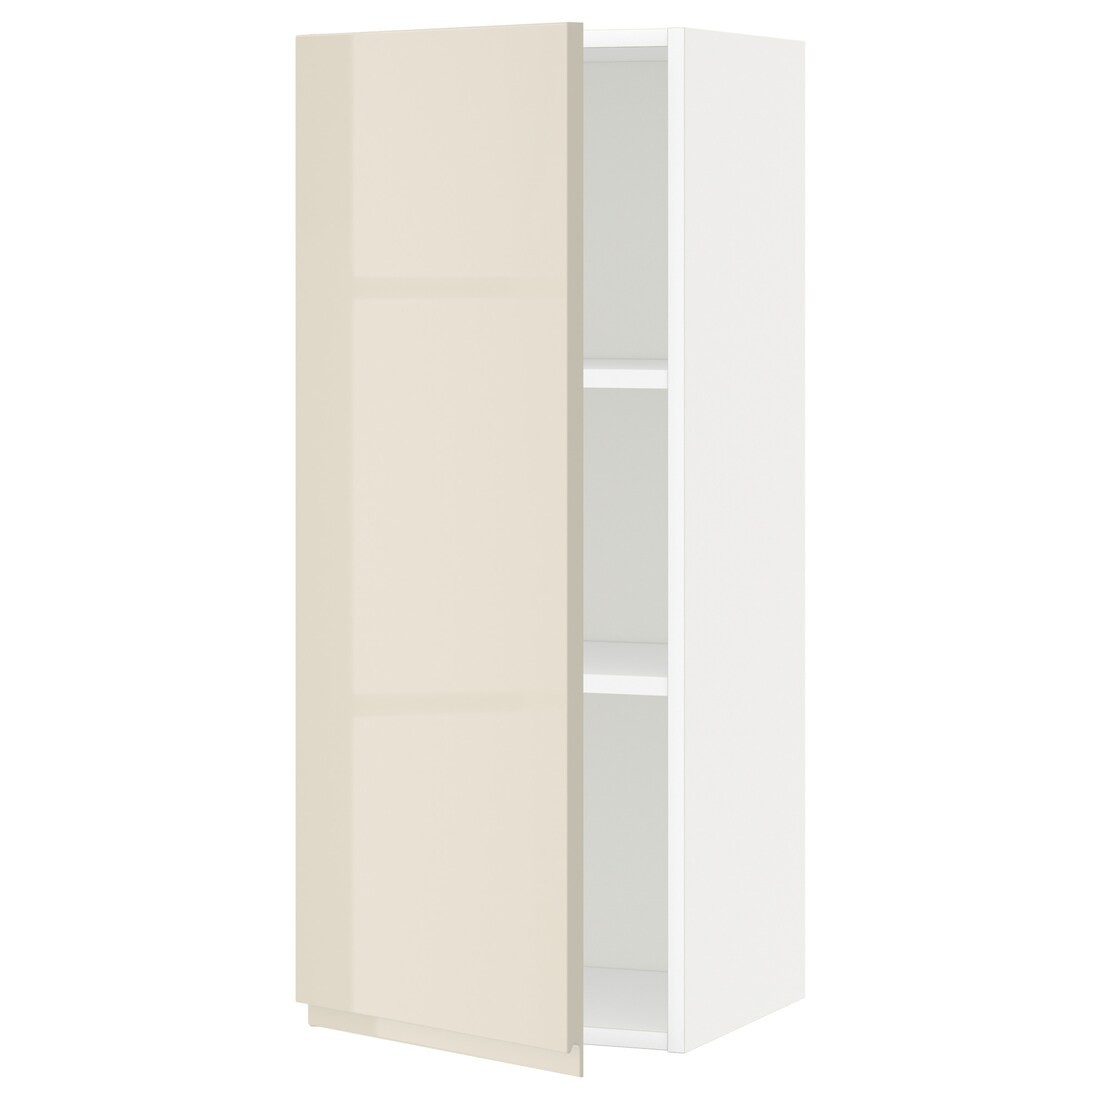 IKEA METOD МЕТОД Шкаф навесной с полками, белый / Voxtorp глянцевый светло-бежевый, 40x100 см 99455015 | 994.550.15